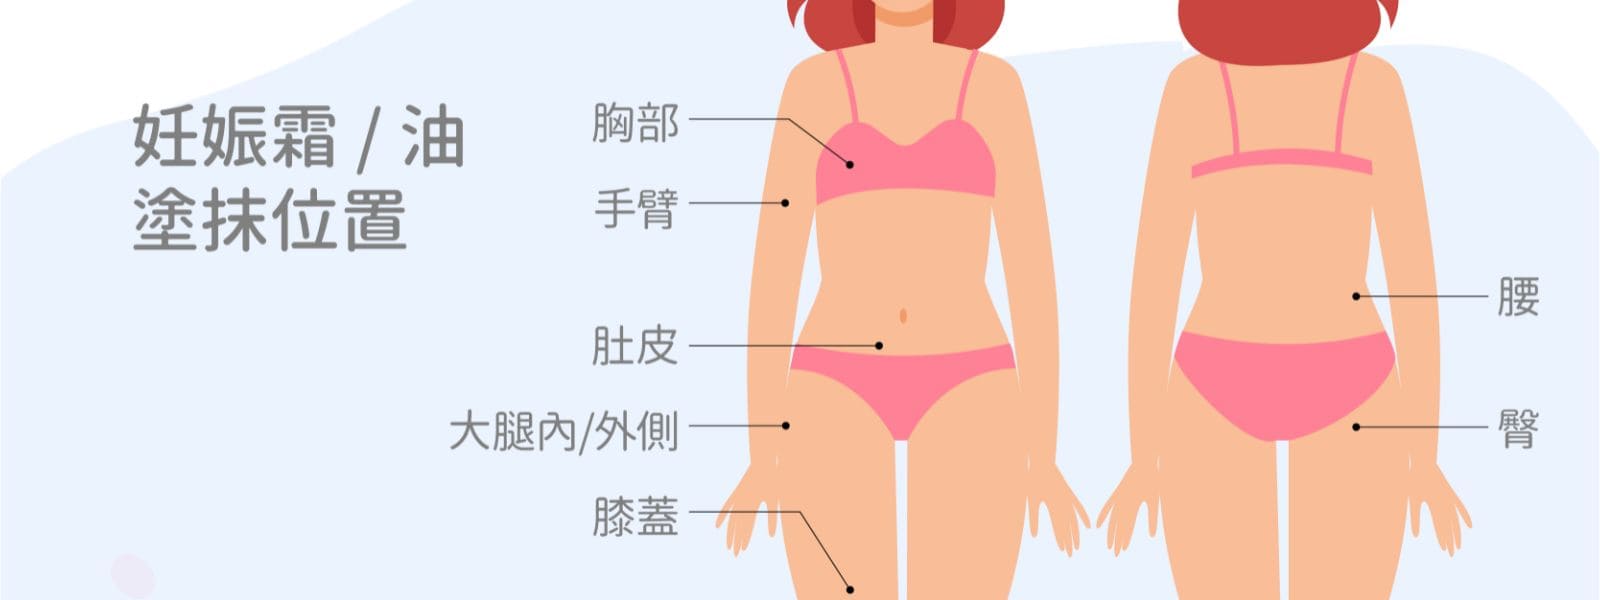 懷孕期間需記得塗抹的位置有胸部、手臂、肚皮、腰部、臀部、大腿內外側以及膝蓋